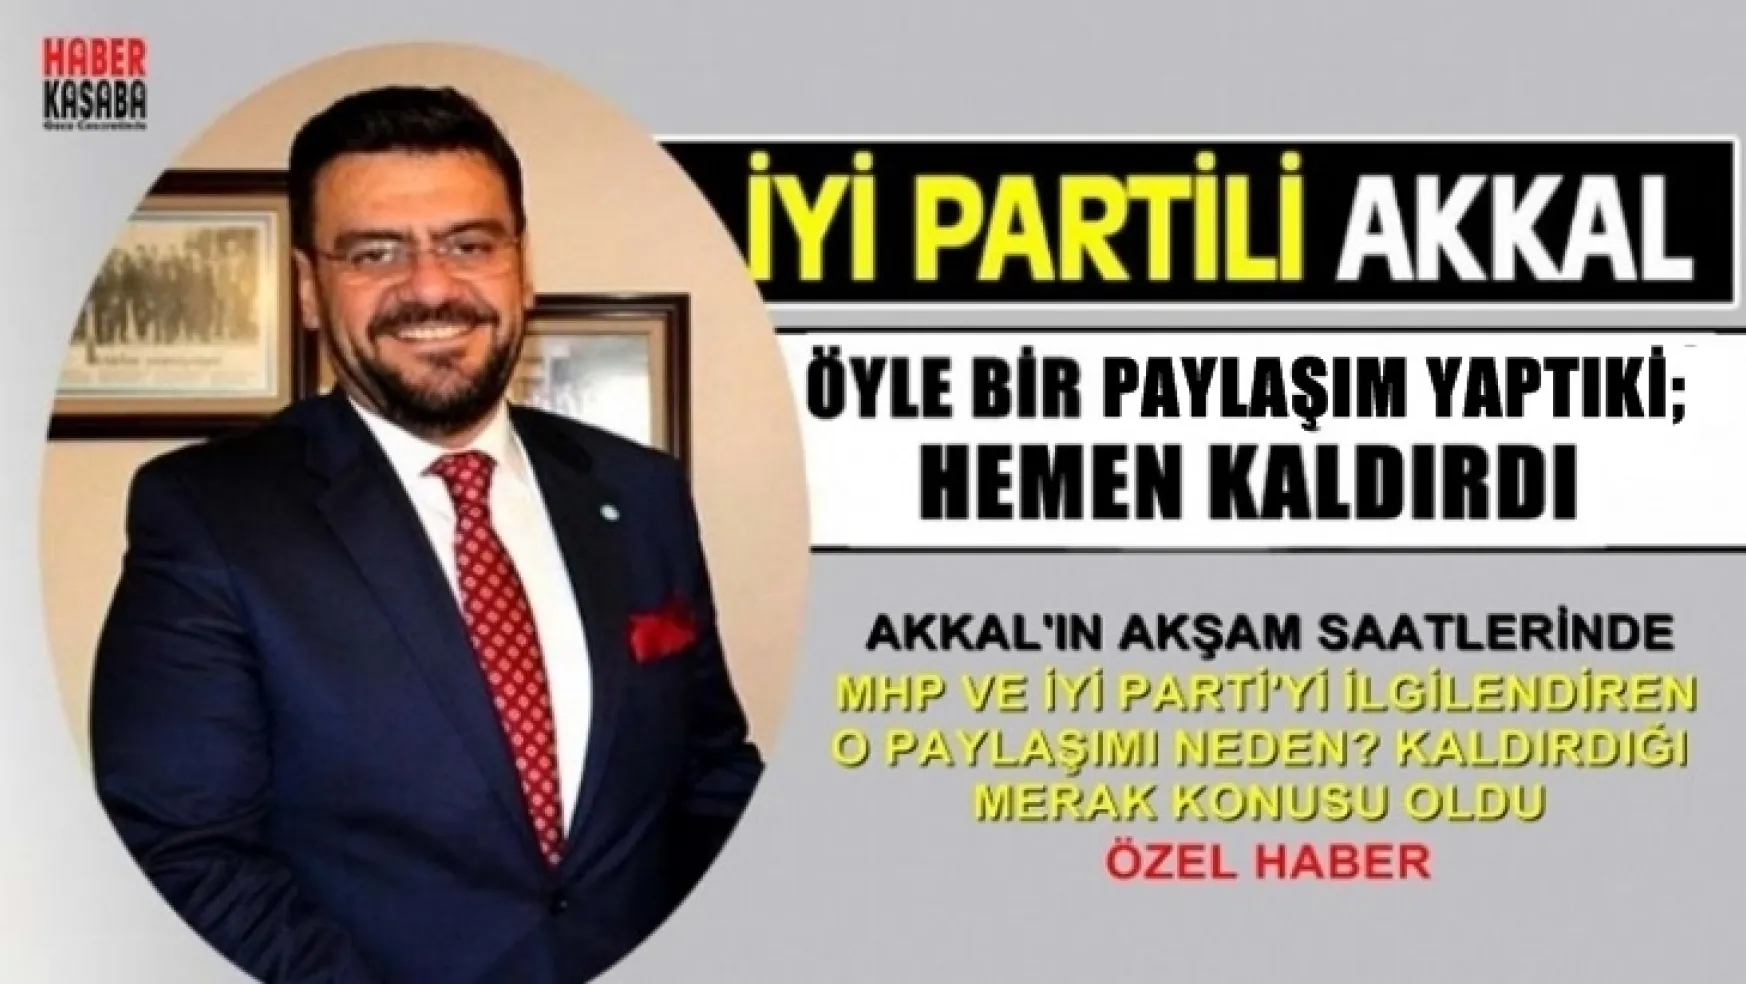 Flaş Haber: İYİ Parti'li Akkal'dan Akıllarda soru işaretlerine neden olan paylaşım